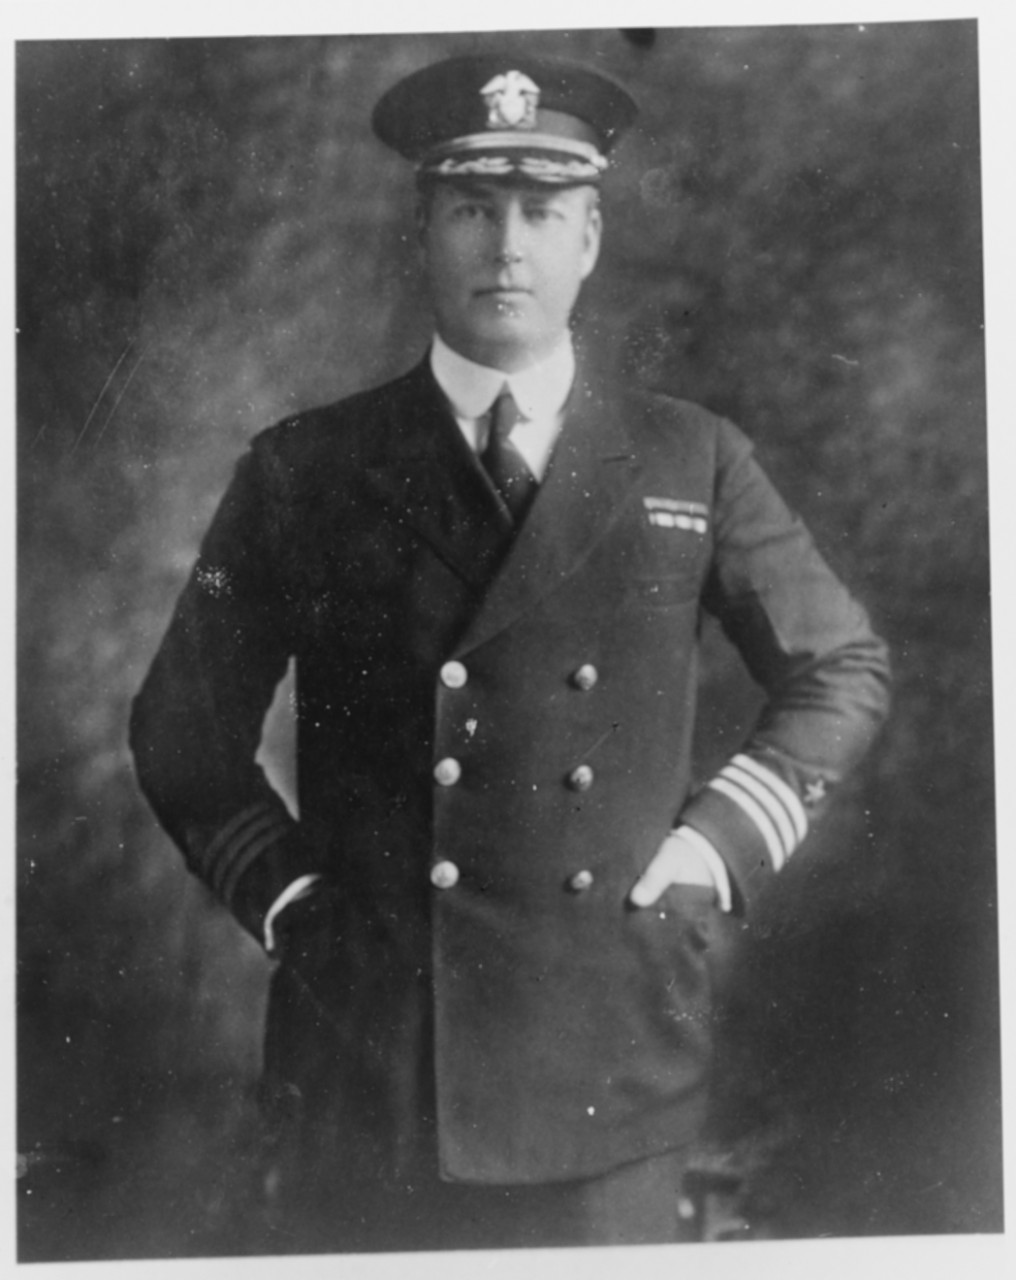 Commander William T. Conn, USN